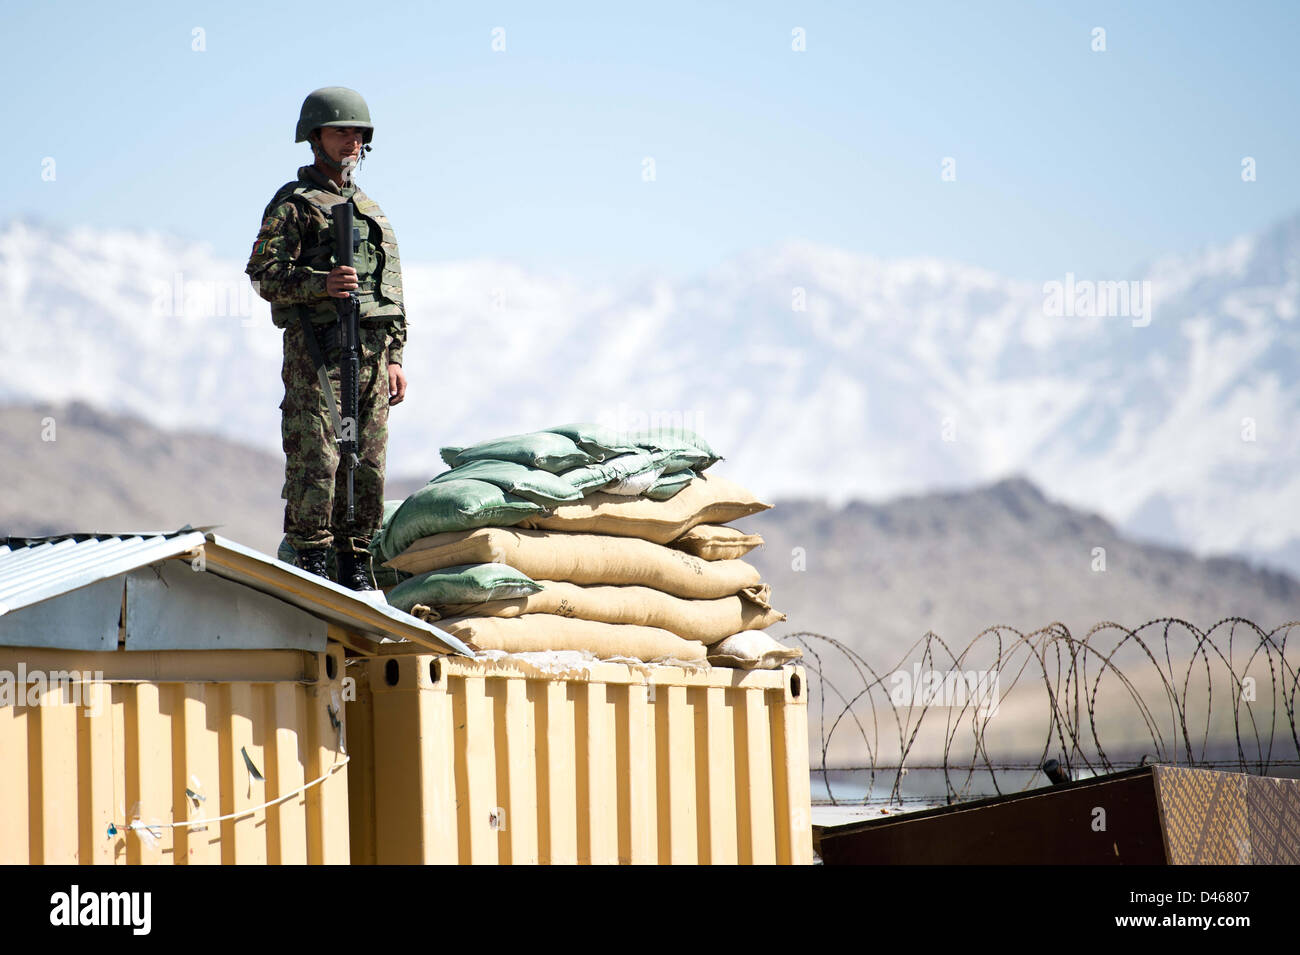 Un soldato dell'Esercito nazionale afgano ripari la scuola di logistica dell'esercito afghano, a Kabul, Afghanistan, 06 marzo 2013. La scuola di logistica è supportato da soldati tedeschi. Foto: Maurizio Gambarini Foto Stock